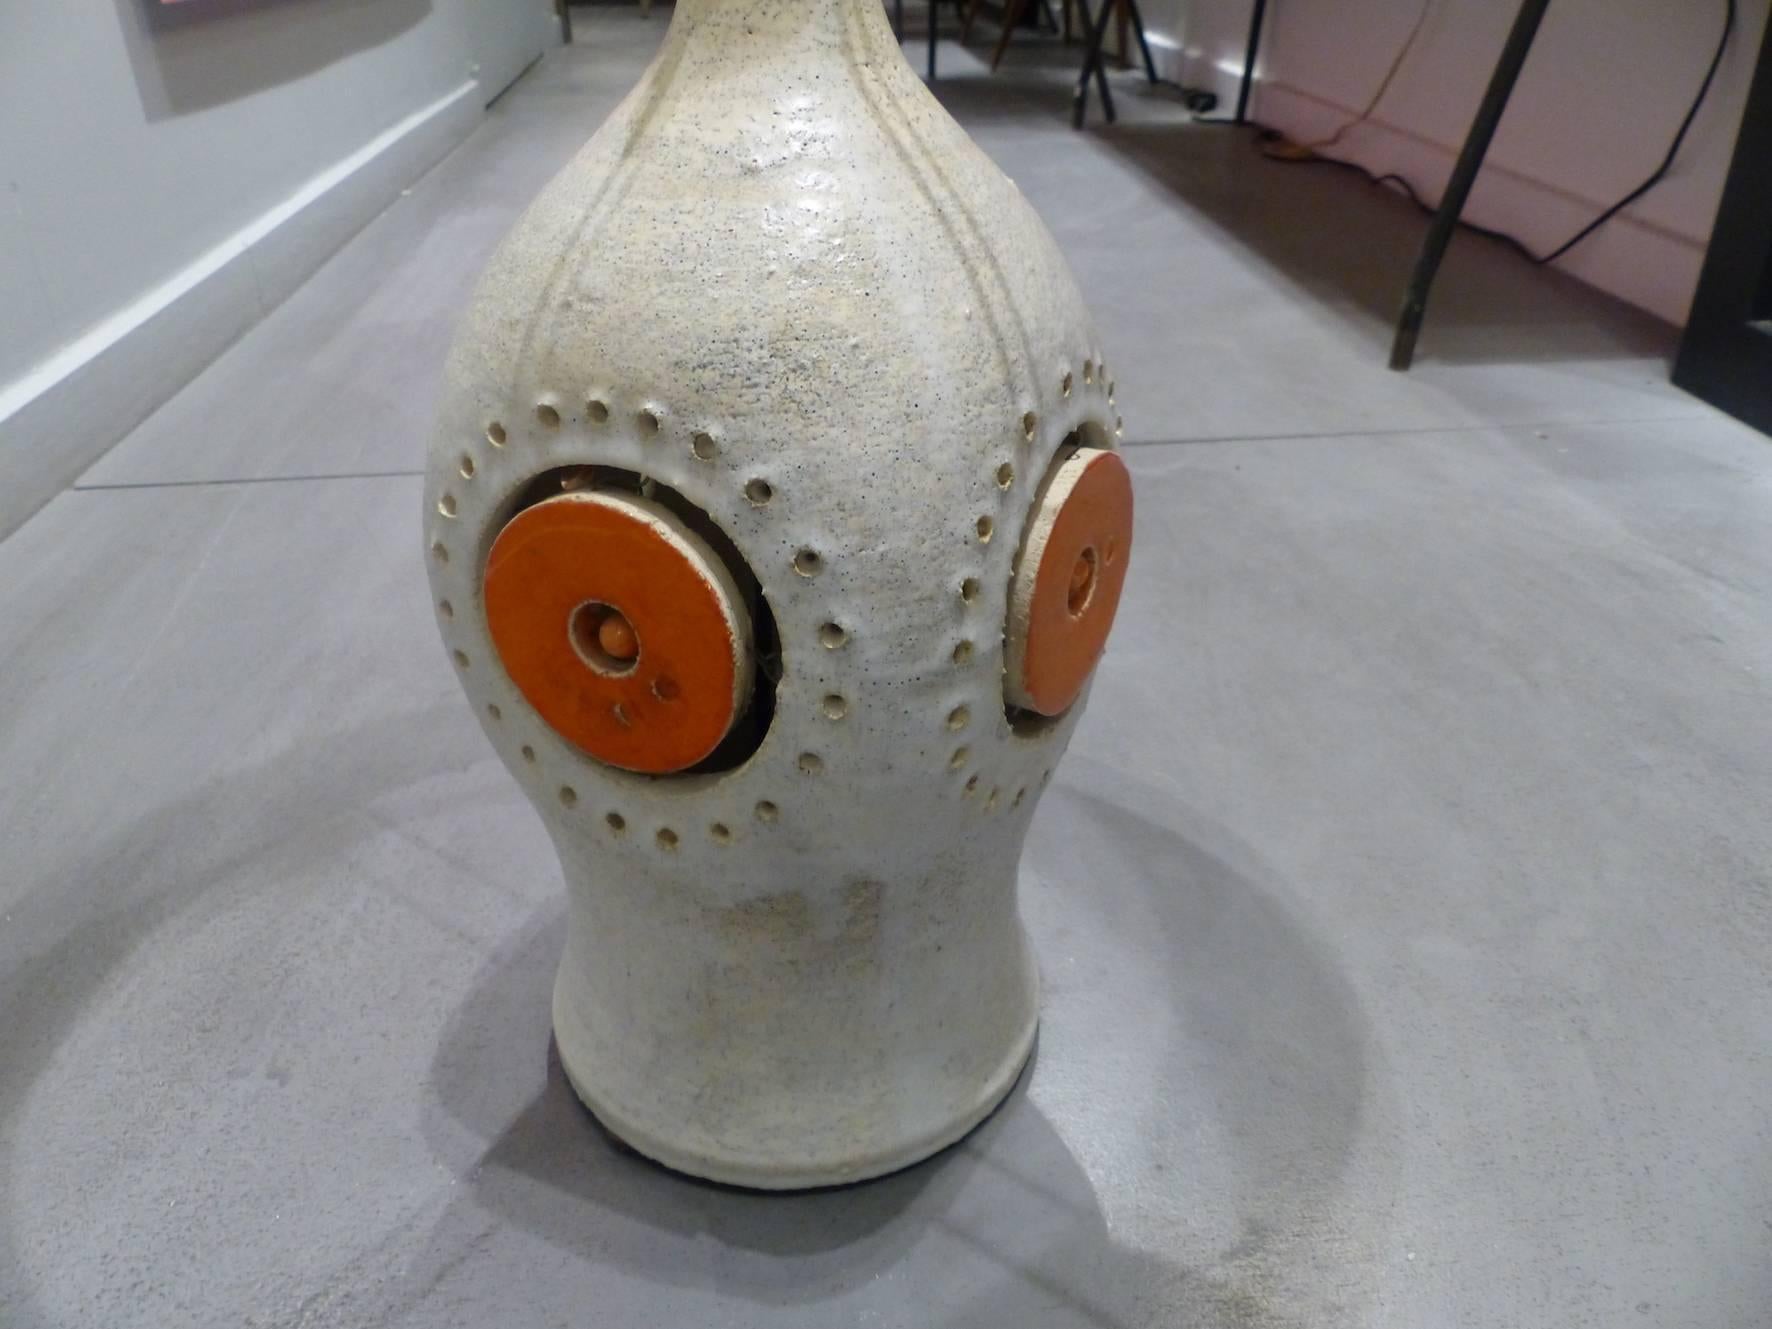 Georges Pelletier beautiful ceramic lamp, circa 1970, in excellent condition.